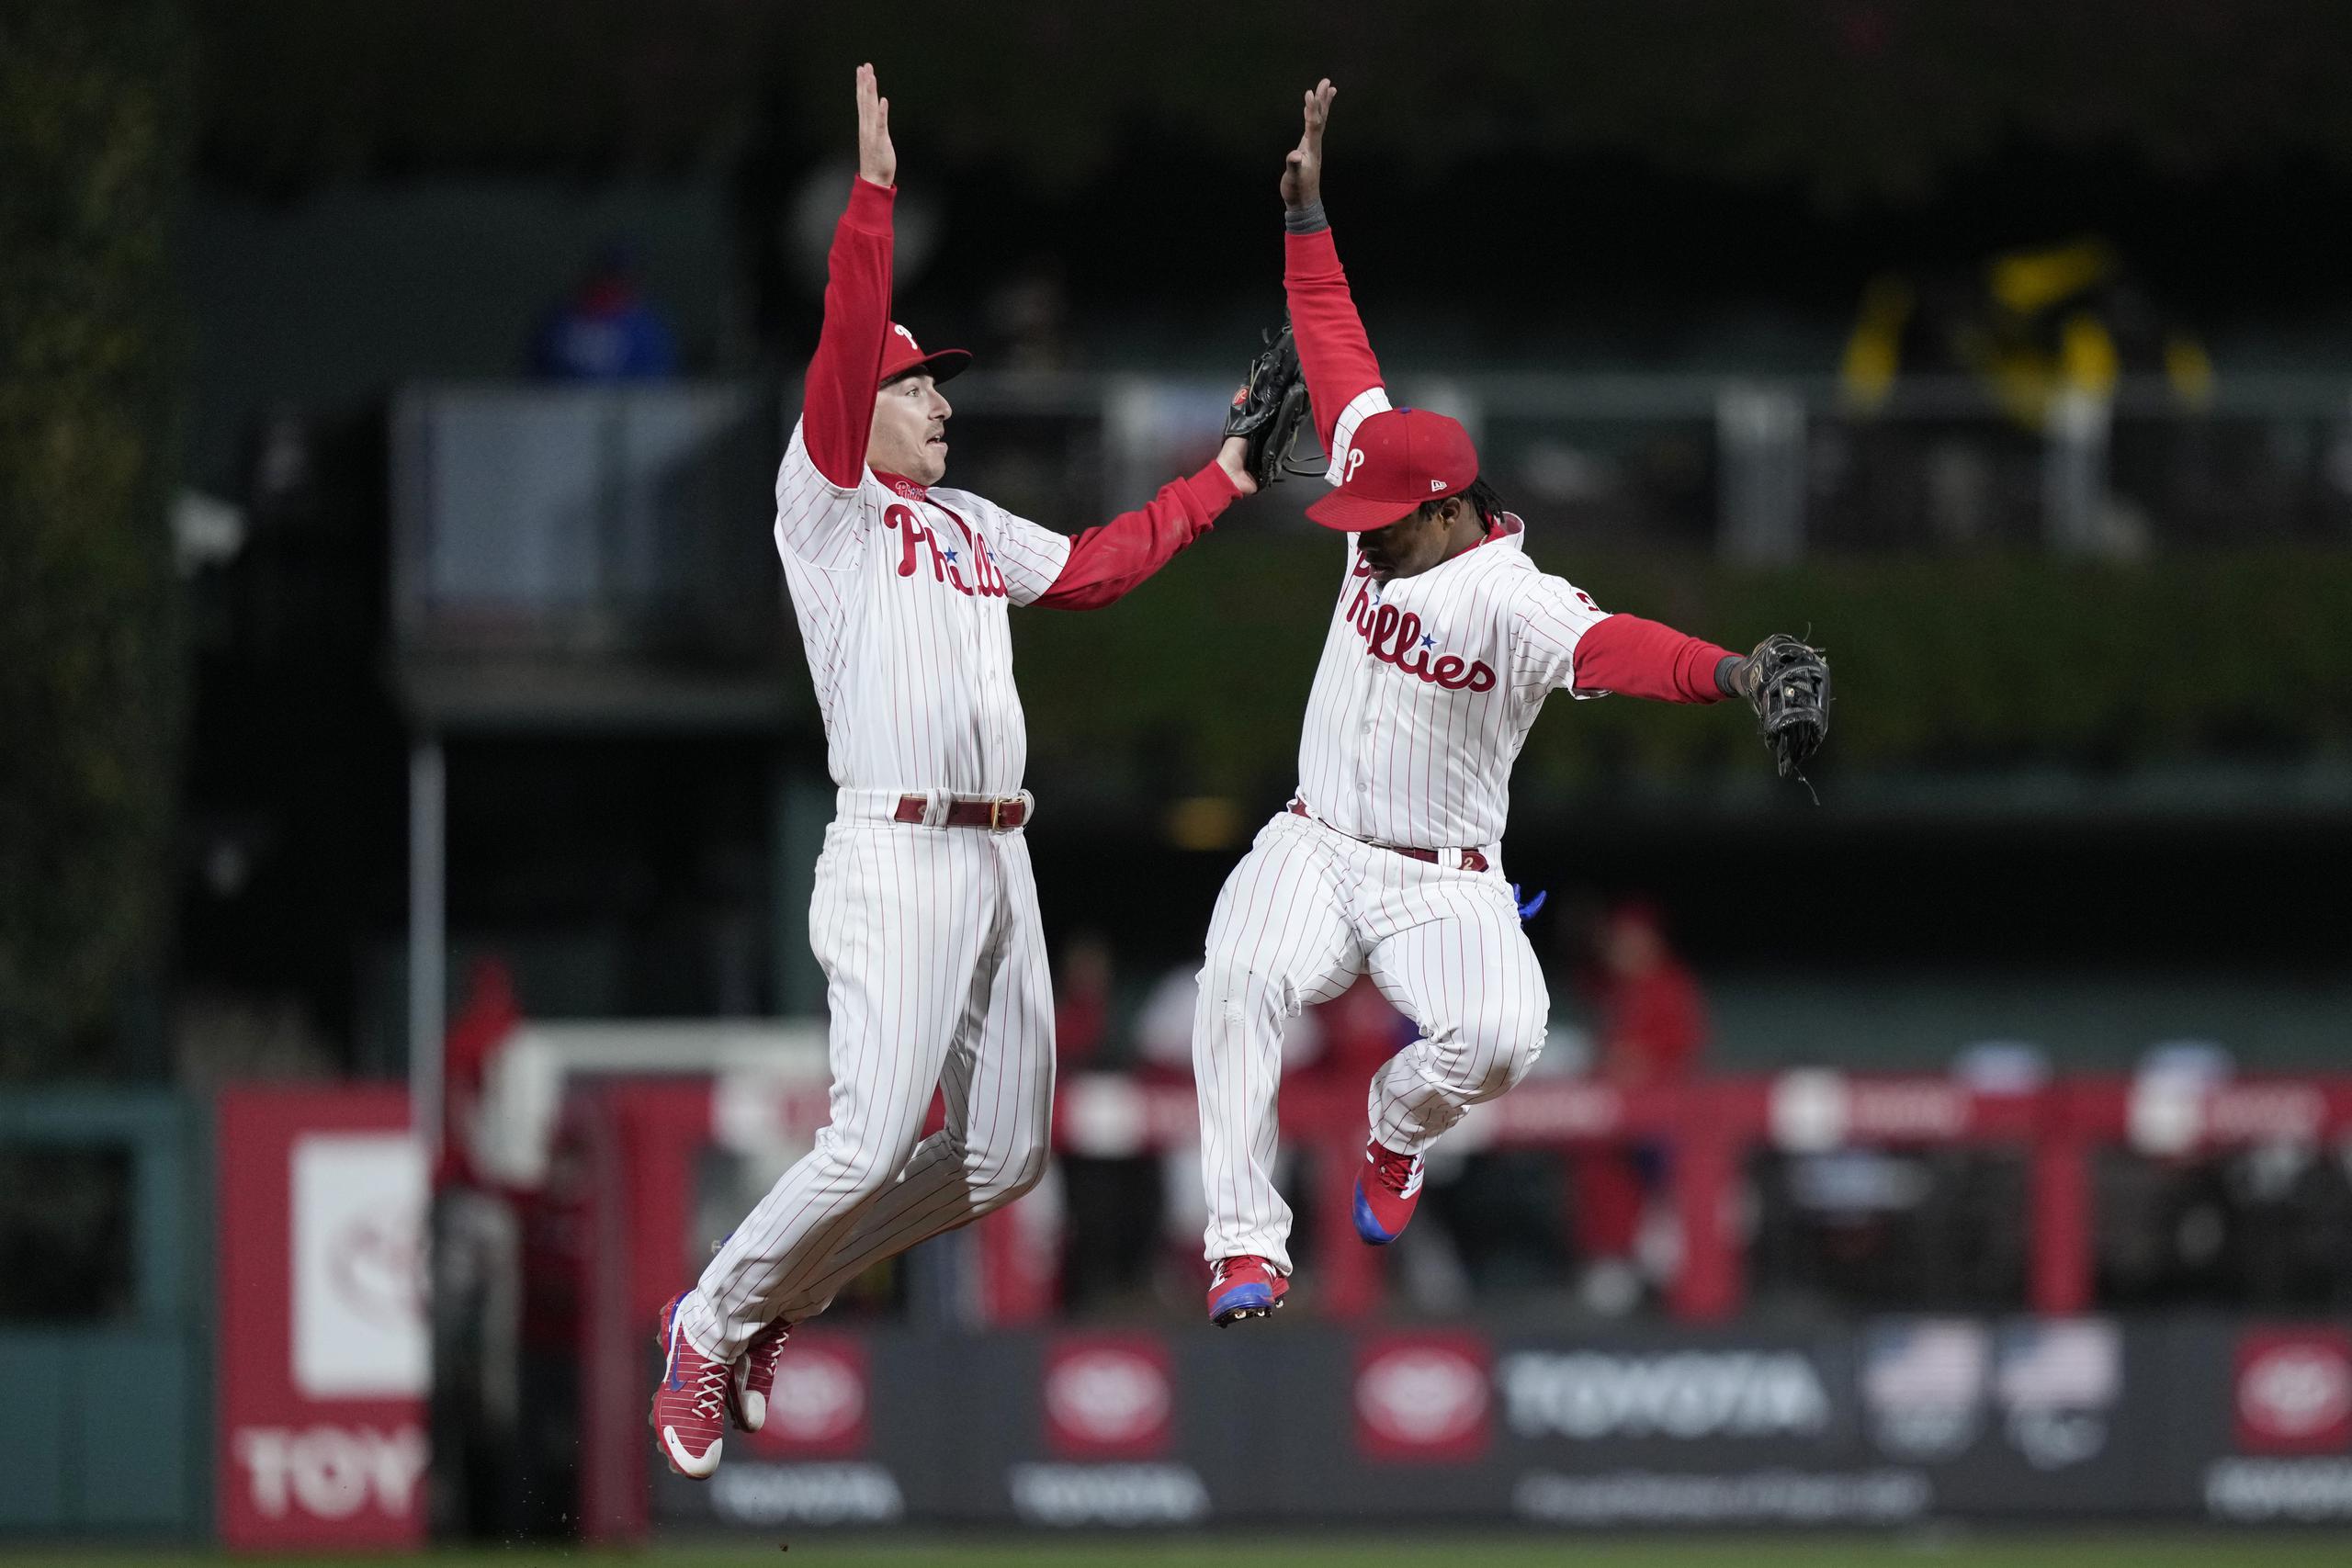 Bryson Stott y el dominicano Jean Segura, izquierda y derecha, respectivamente, saltan para festejar la victoria de los Phillies de Filadelfia el sábado sobre los Padres de San Diego en el cuarto juego de la Serie de Campeonato de la Liga Nacional.